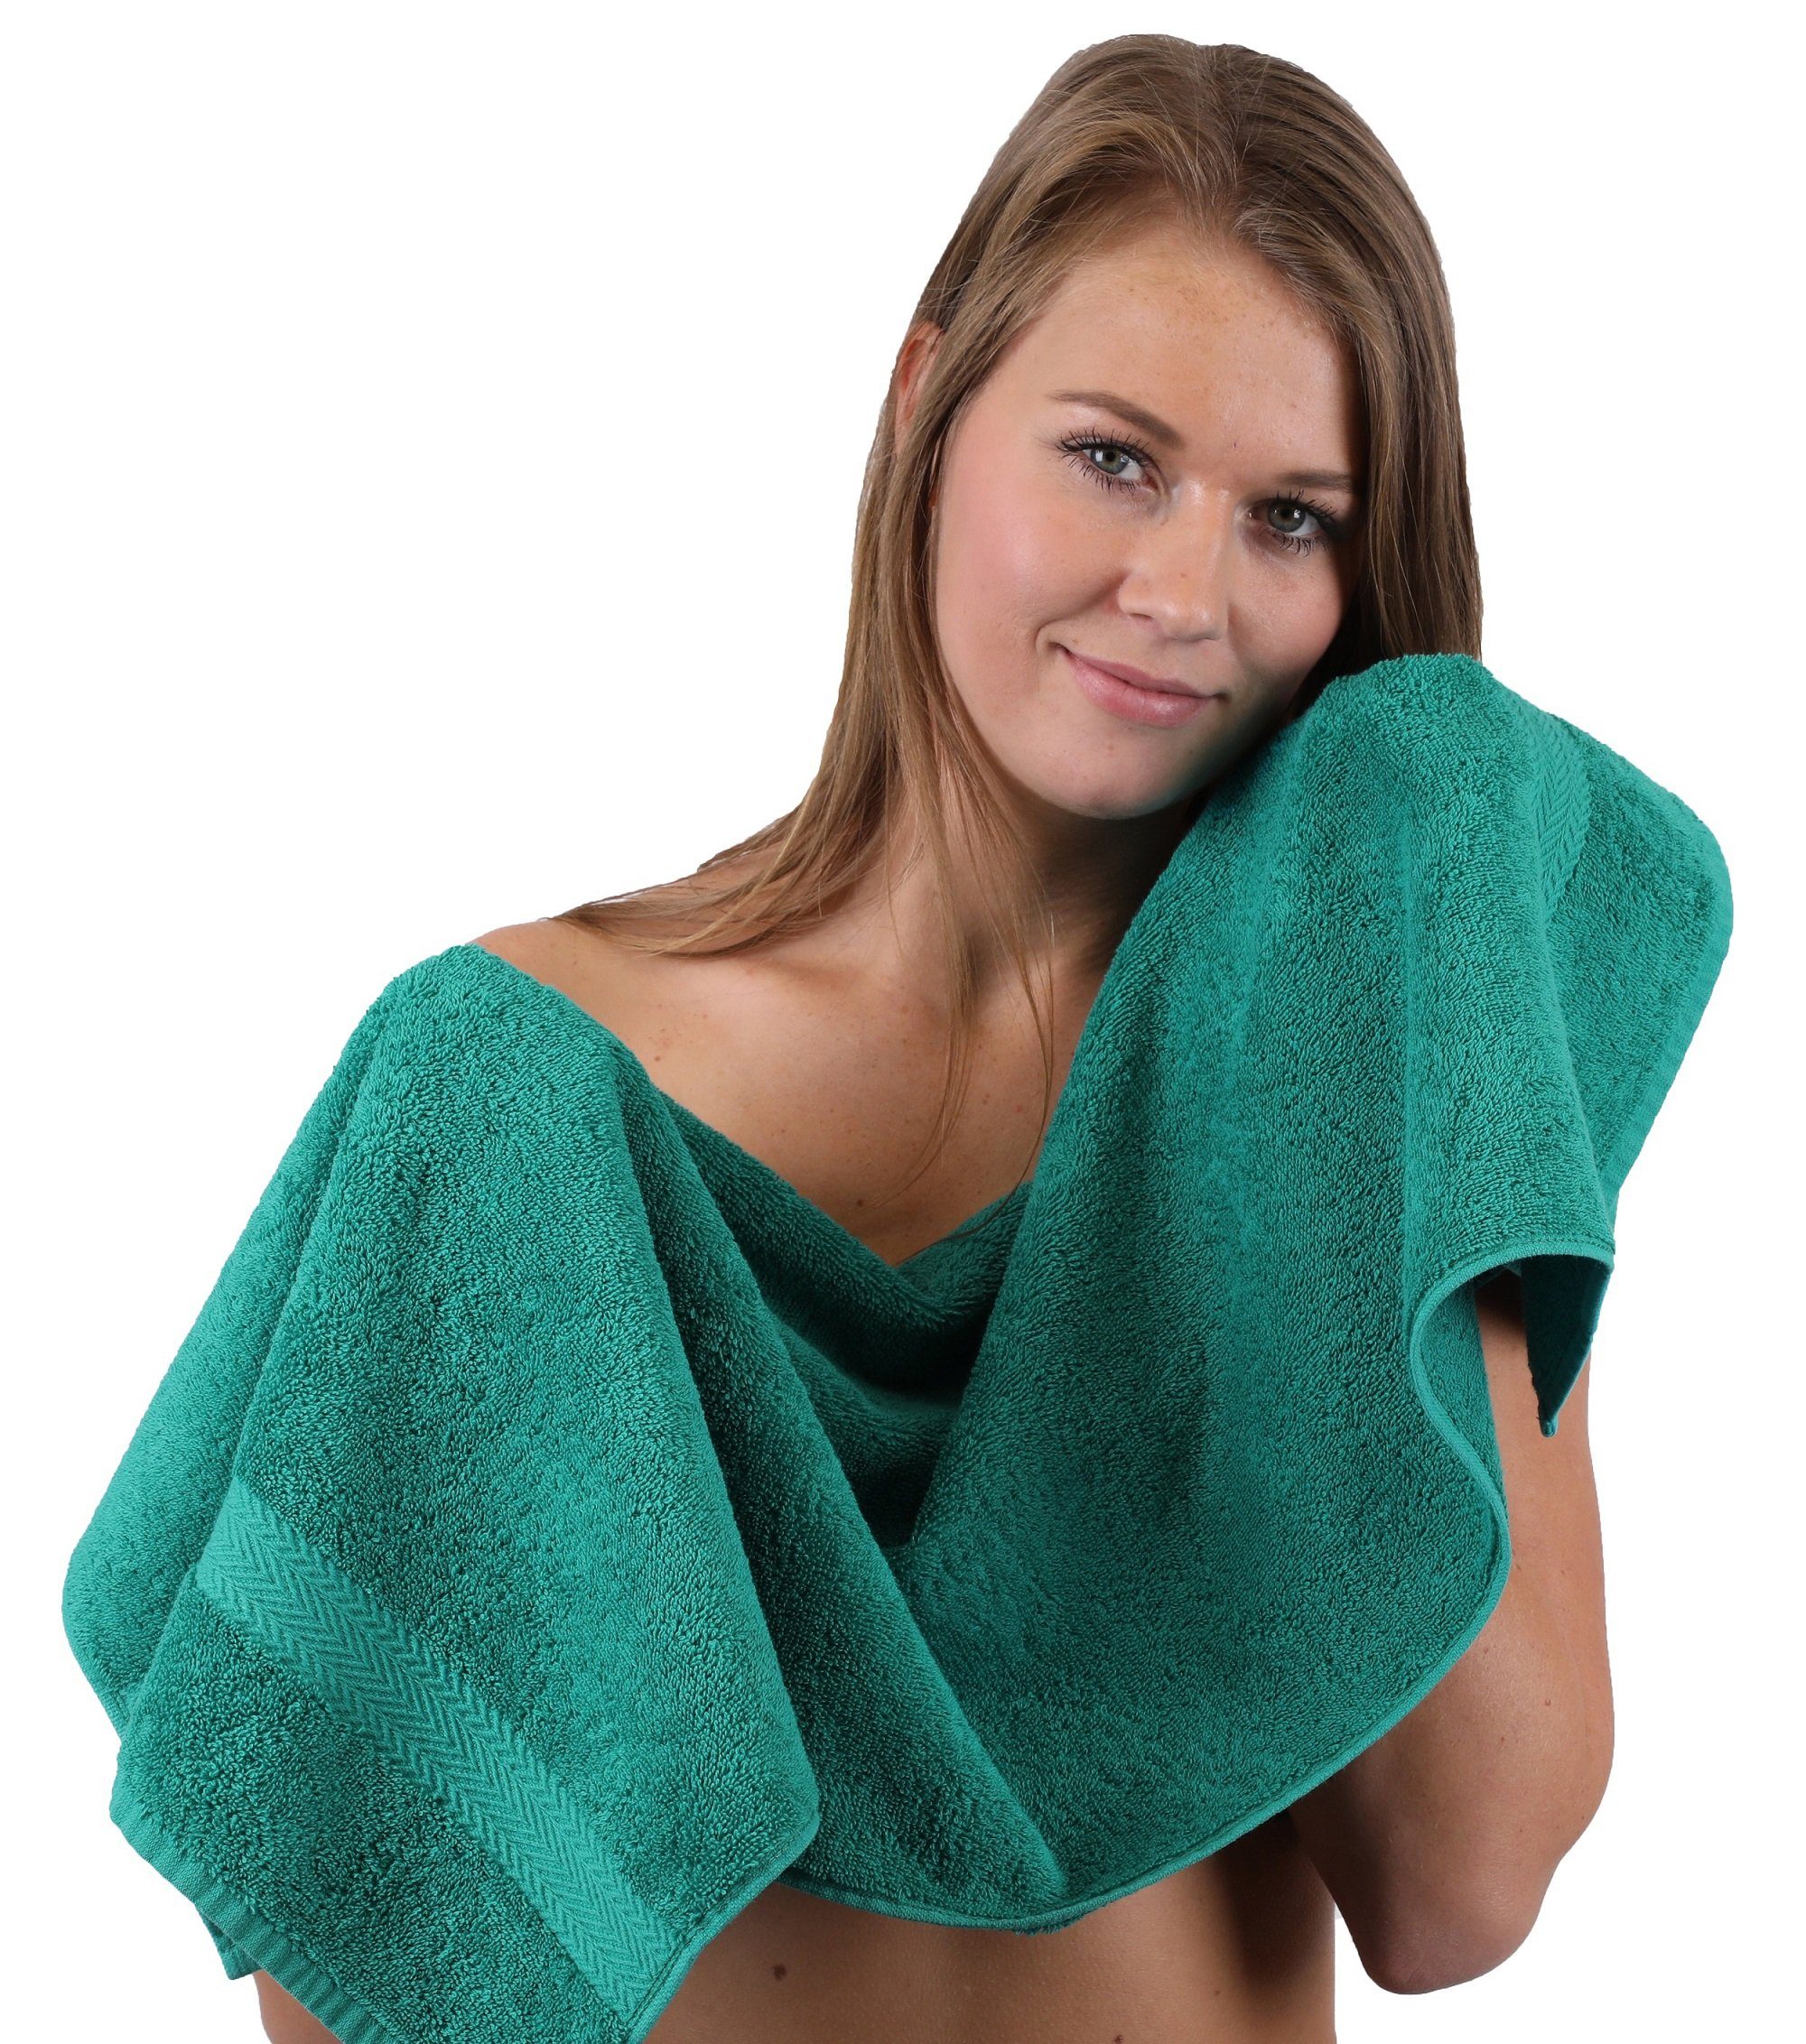 und Baumwolle smaragdgrün ClassicFarbe 100% Set silbergrau, Handtuch-Set 10-TLG. Handtuch Betz